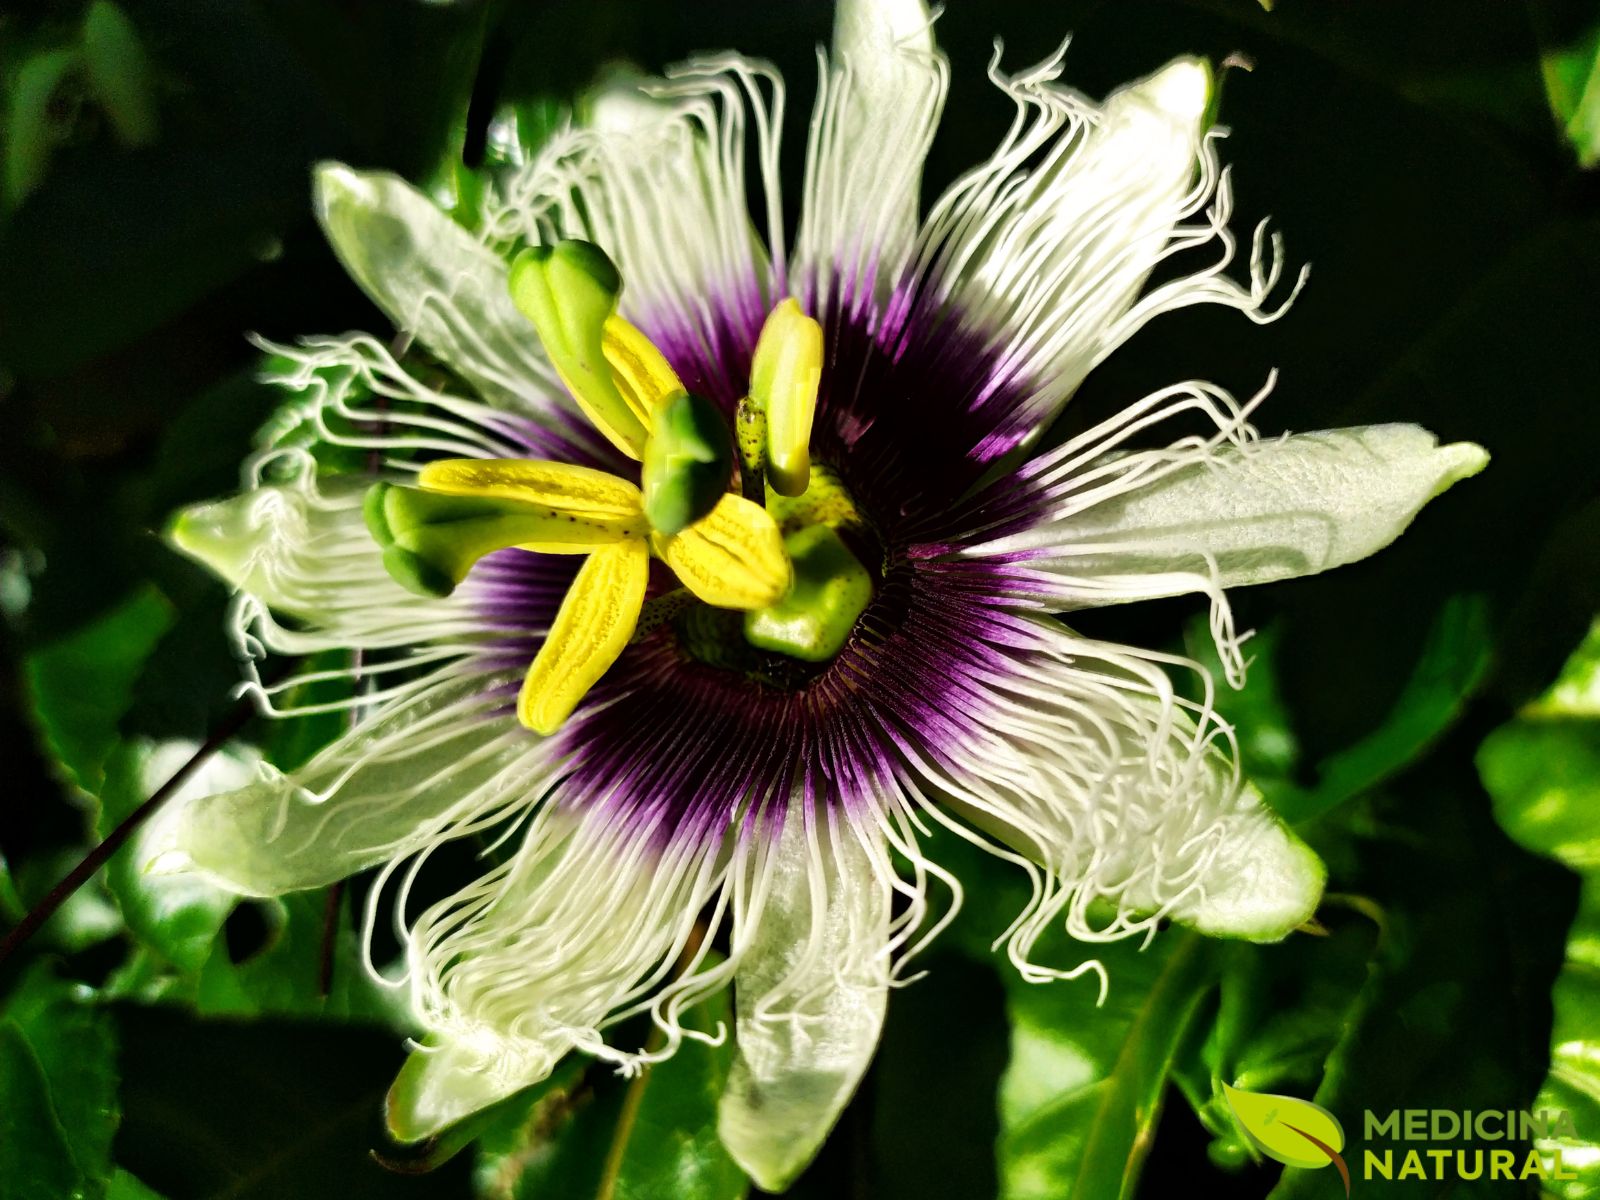 Flor-da-Paixão (Maracujá) - Passiflora incarnata